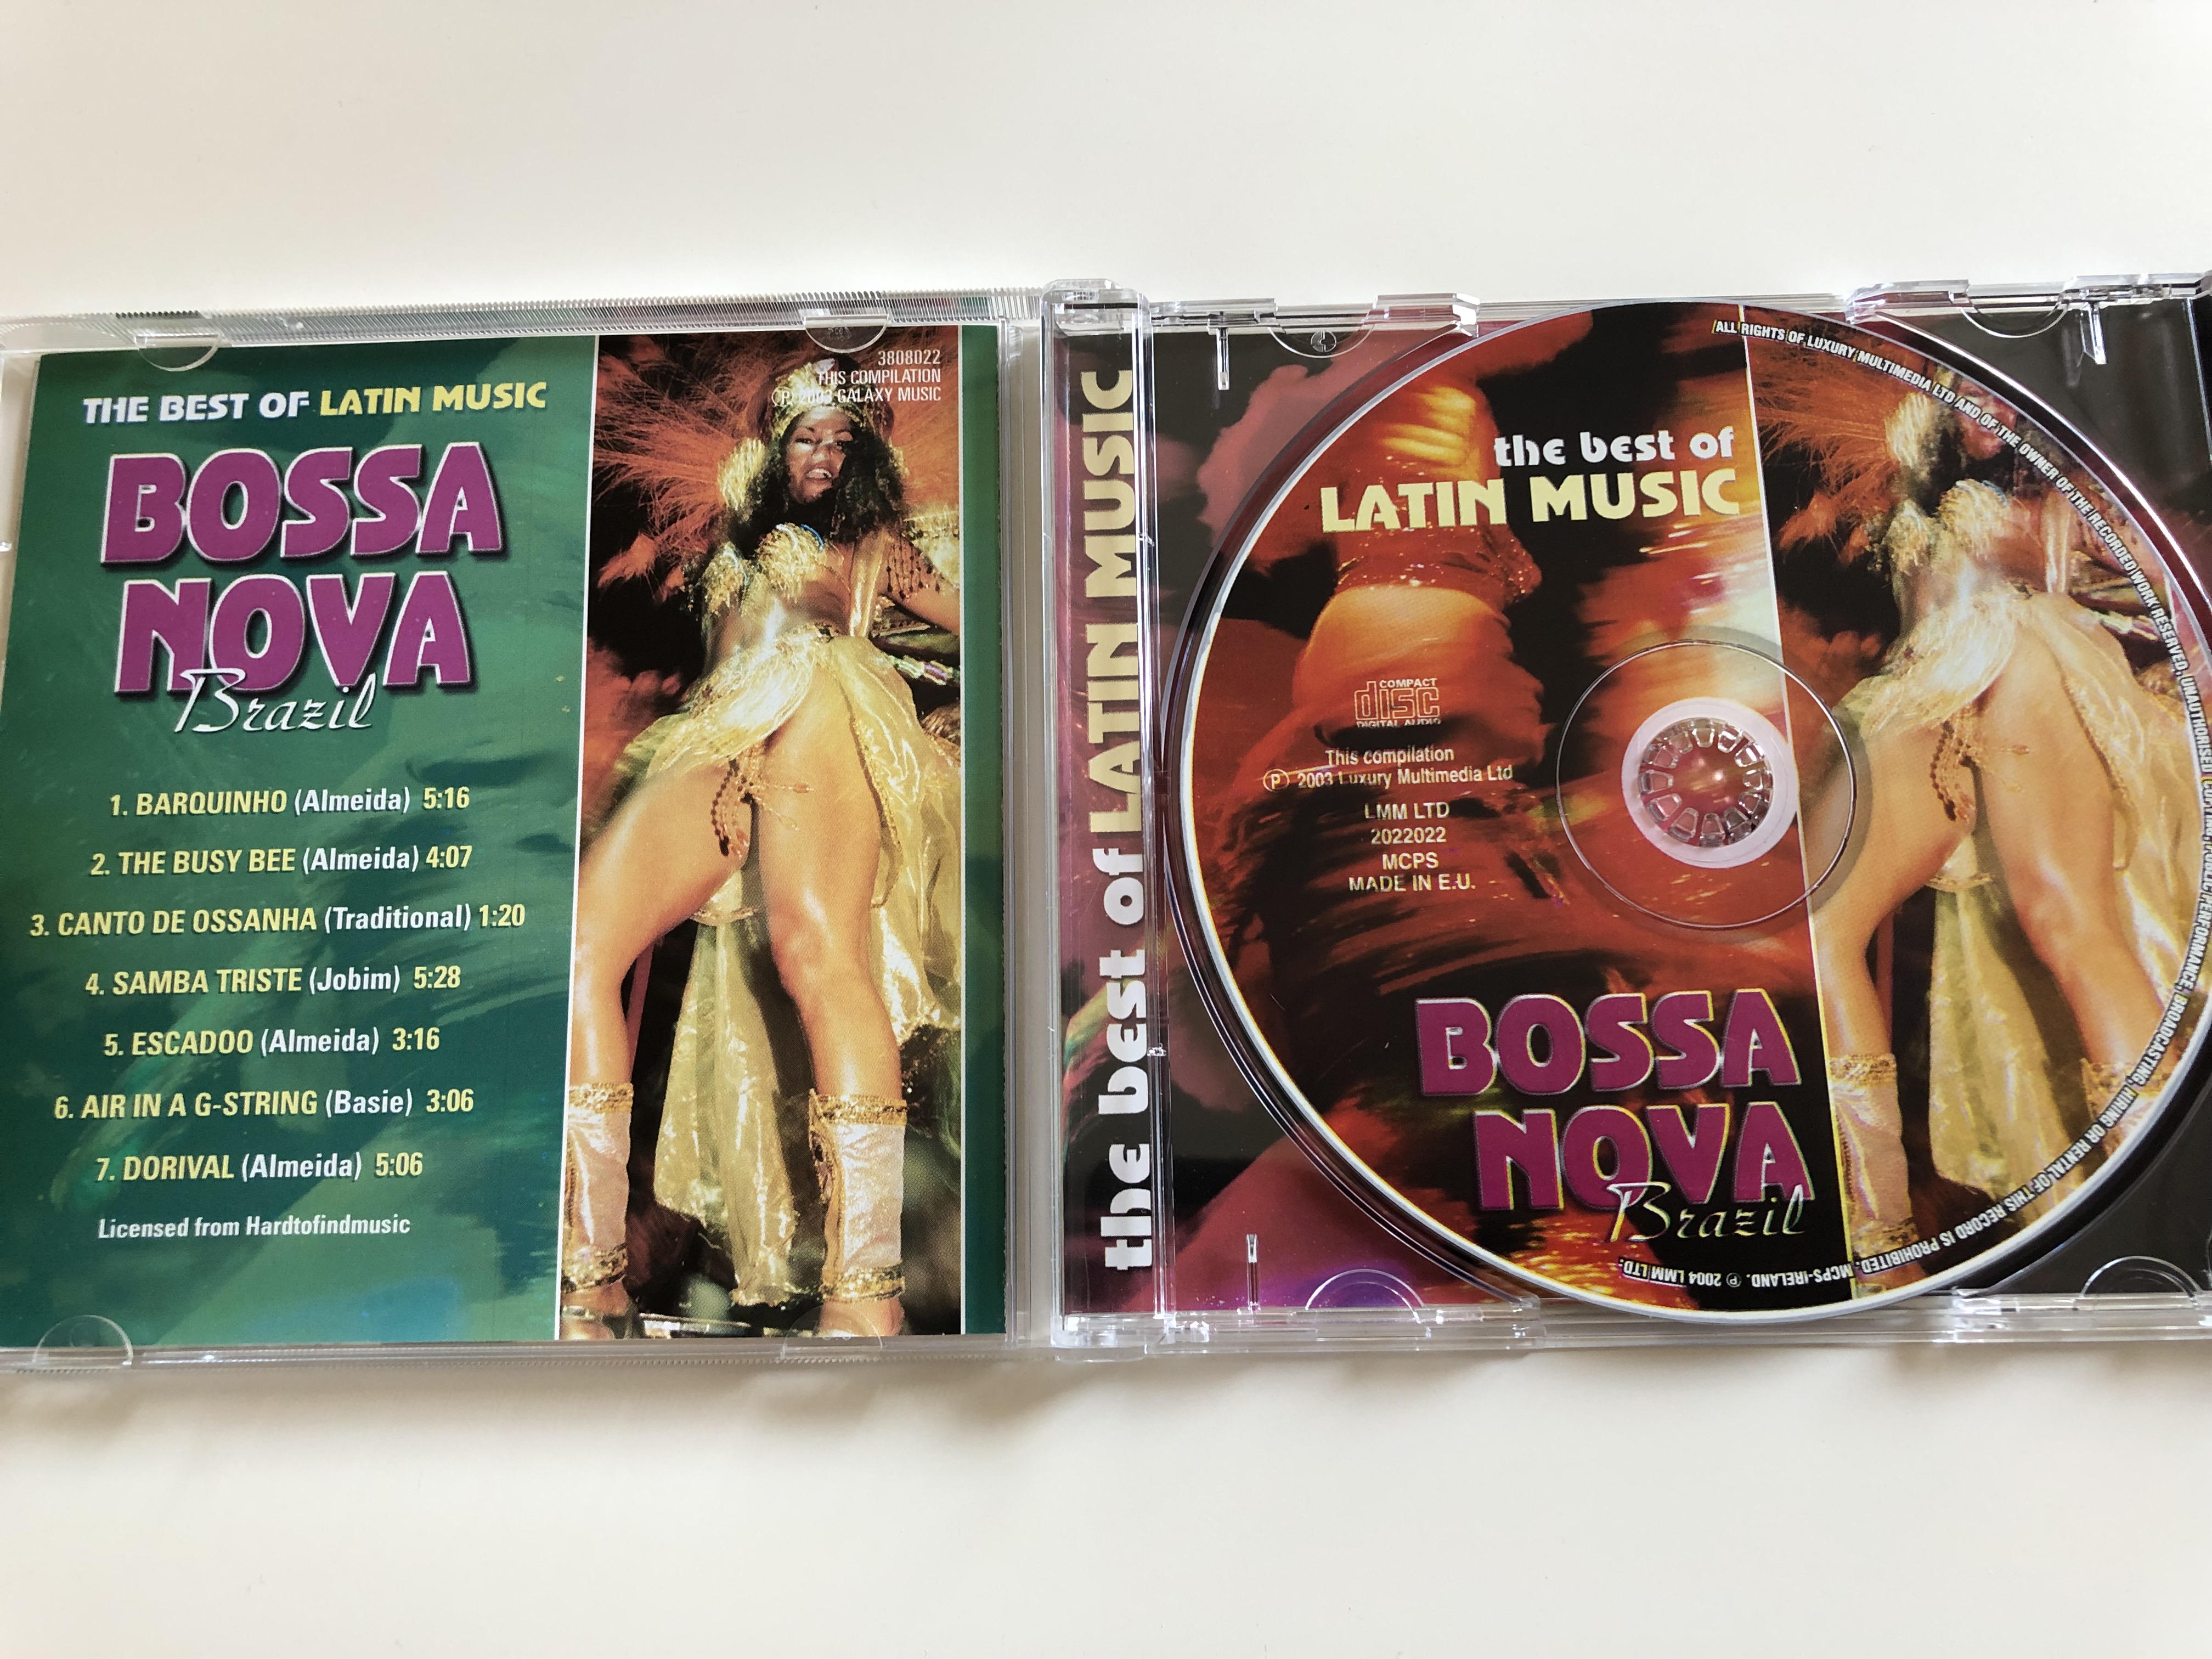 brazil-bossa-nova-laurindo-almeida-barquinho-escadoo-canto-de-ossanha-and-many-more-hits-the-best-of-latin-music-galaxy-music-audio-cd-2003-3808022-2-.jpg